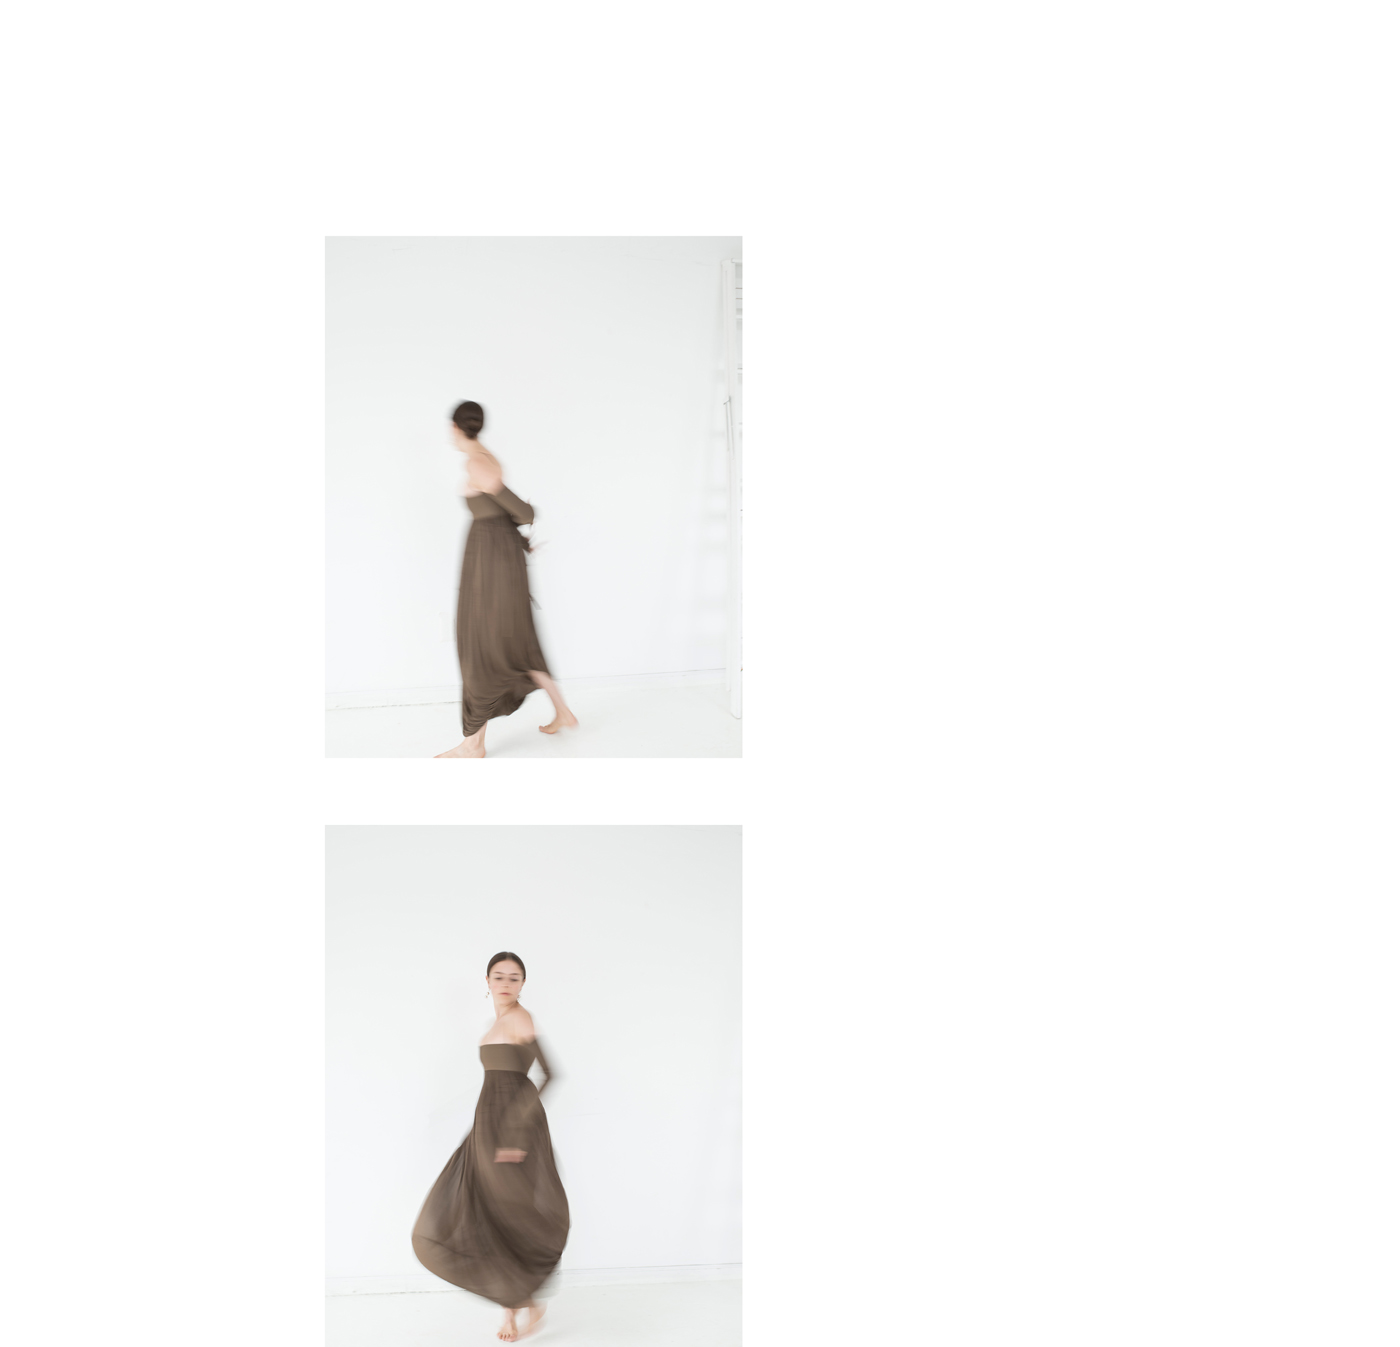 Dress by Céline.